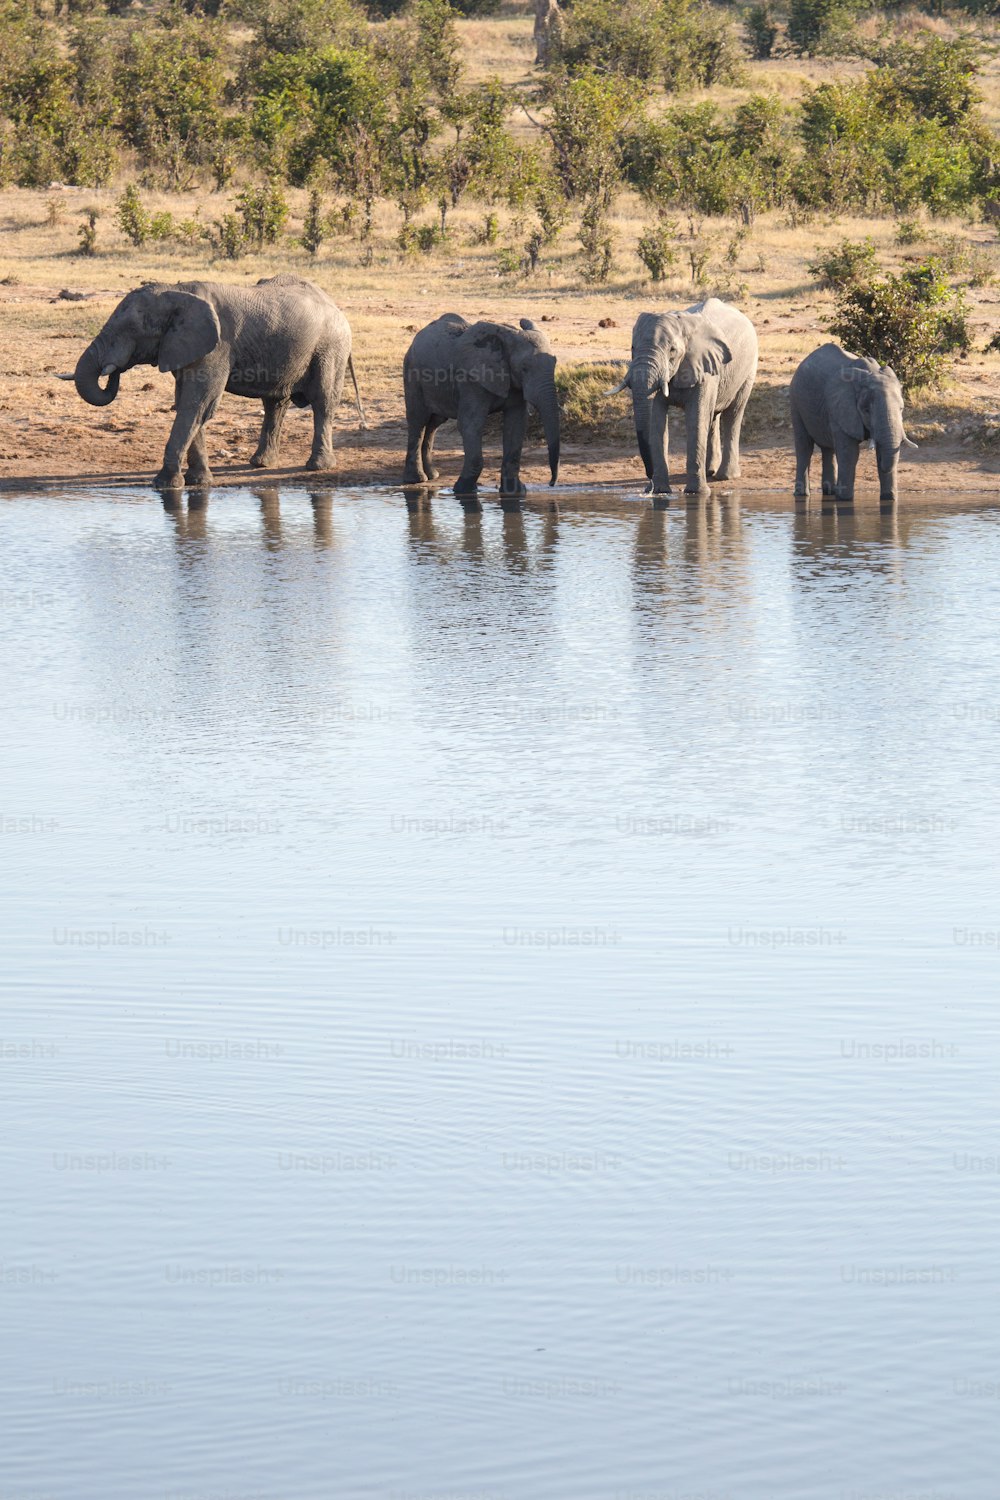 Elephants drinking at a waterhole